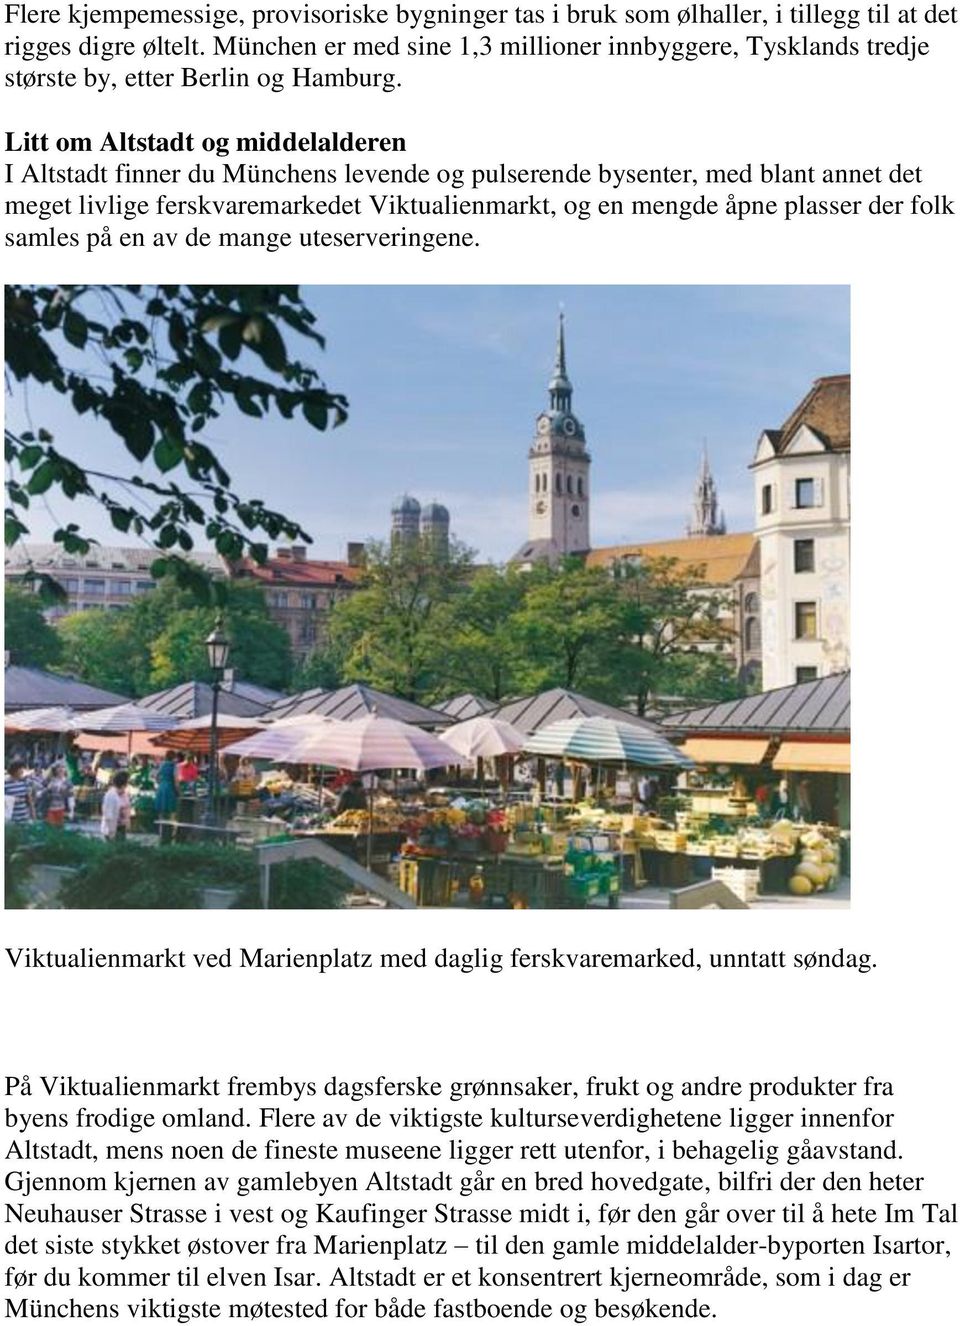 Litt om Altstadt og middelalderen I Altstadt finner du Münchens levende og pulserende bysenter, med blant annet det meget livlige ferskvaremarkedet Viktualienmarkt, og en mengde åpne plasser der folk